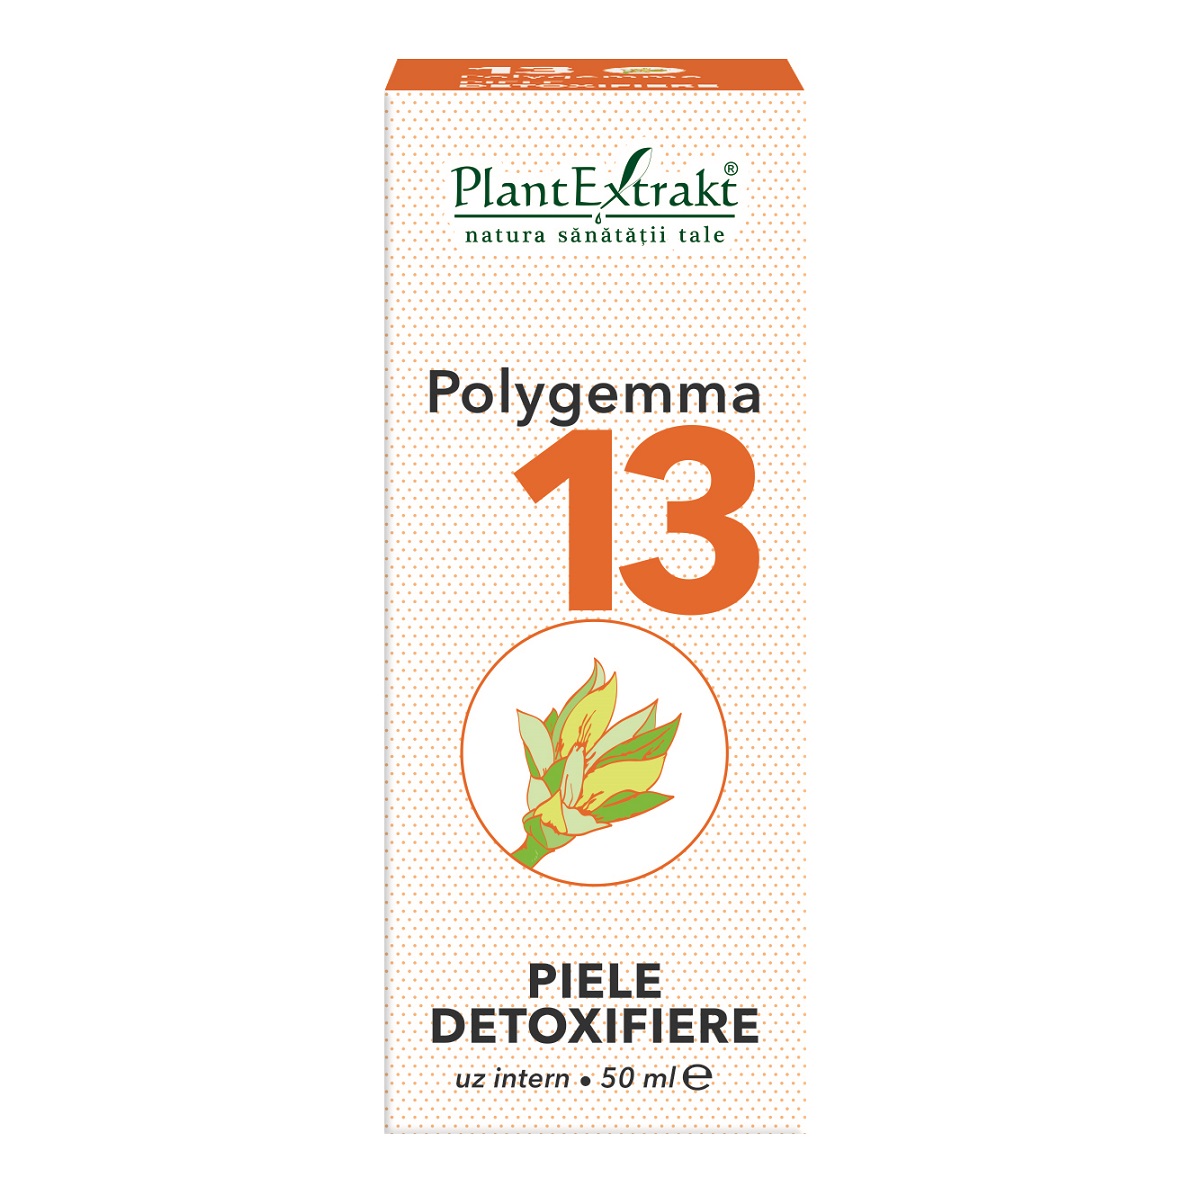 PlantExtrakt Polygemma nr. 15 Intestin-Detoxifiere x 50 ml